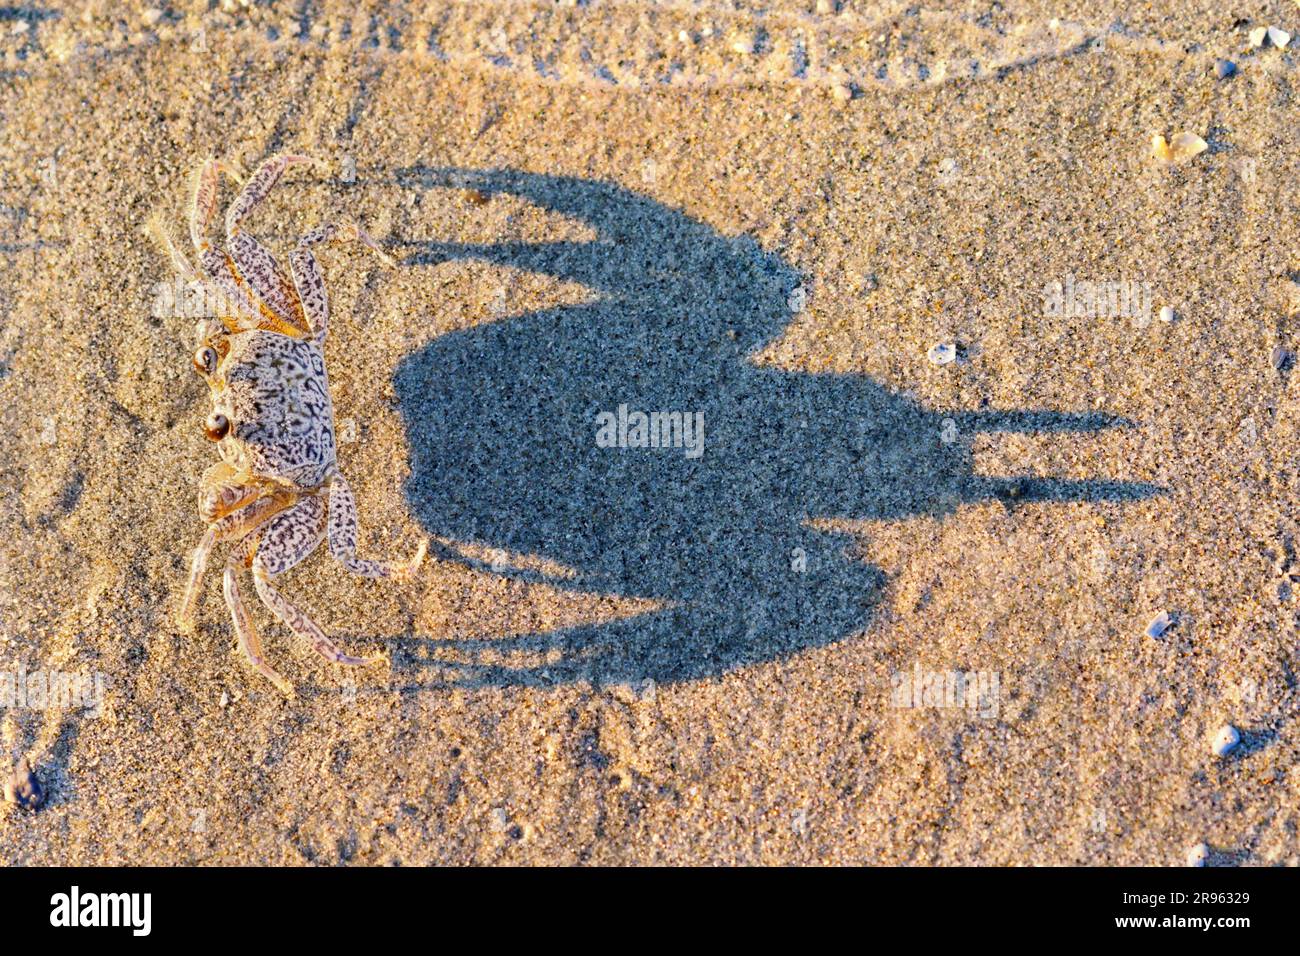 Am Meeresstrand Galveston, Texas, USA, gibt es junge Geisterkrabben oder Sandkrabben (Ocypode quadrata), deren Schatten auf dem Sand liegt. Stockfoto